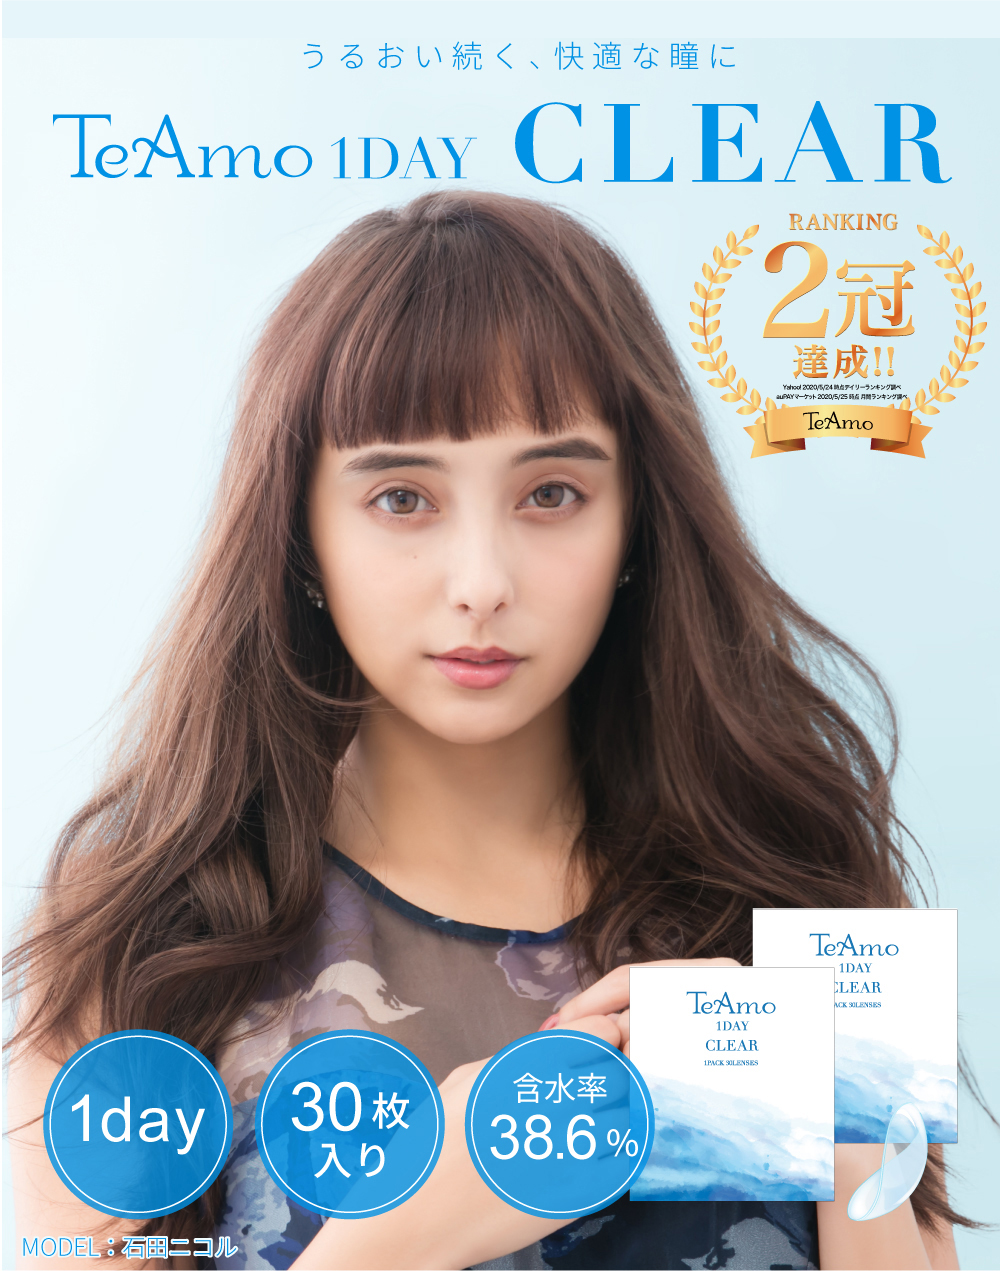 うるおい続く、快適な瞳に TeAmo1DAY CLEAR 1day 30枚入り 含水率38.6%